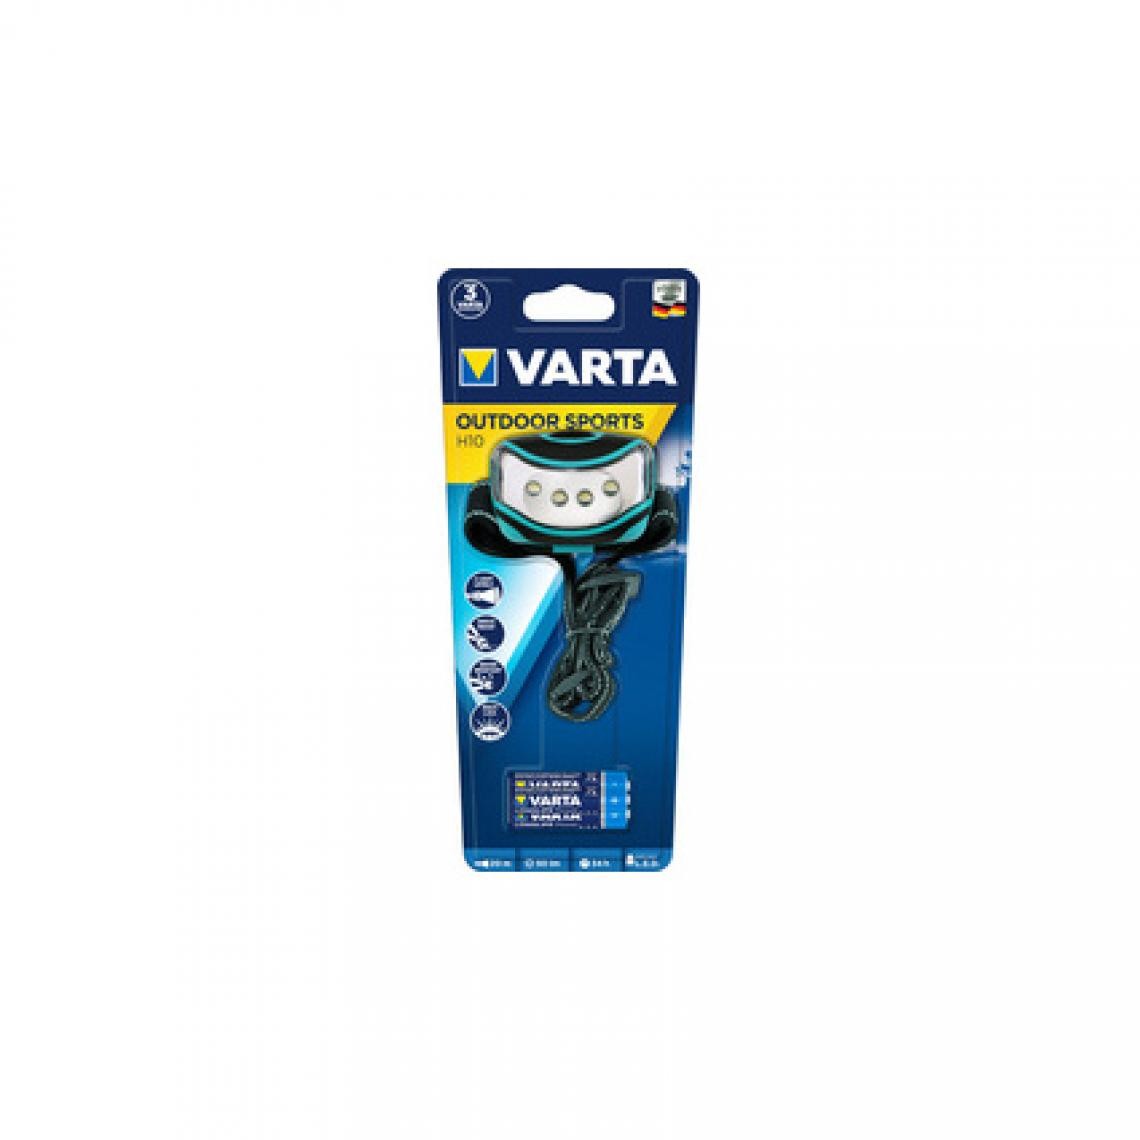 Varta - VARTA Lampe frontale LED 'Outdoor Sports', 4 LEDs () - Véhicule à pédales